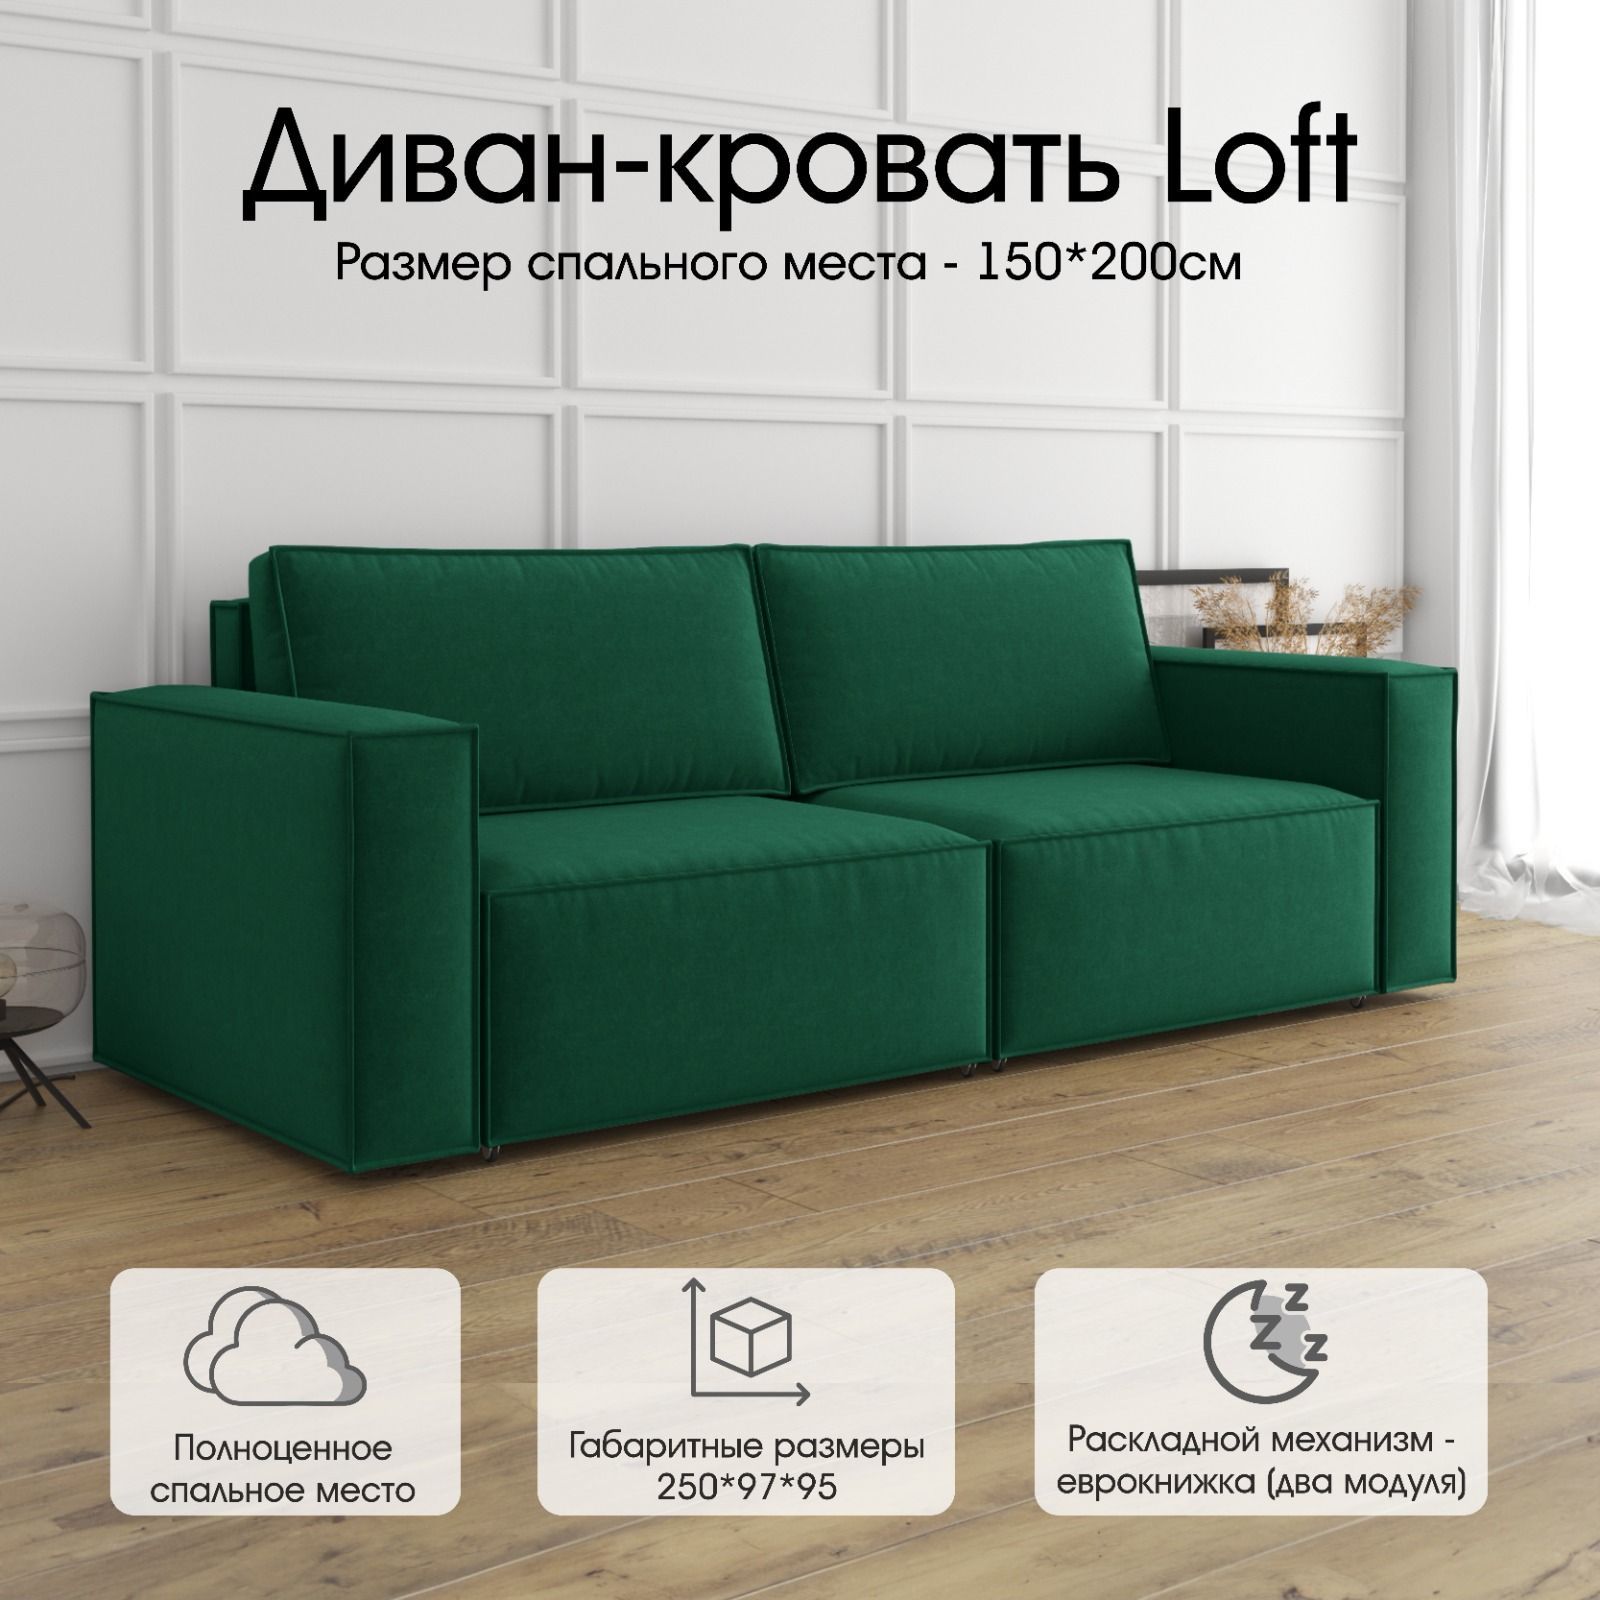 Прямой диван диван_Loft, механизм Еврокнижка, 250х97х98 см - купить понизкой цене в интернет-магазине OZON (1043351015)